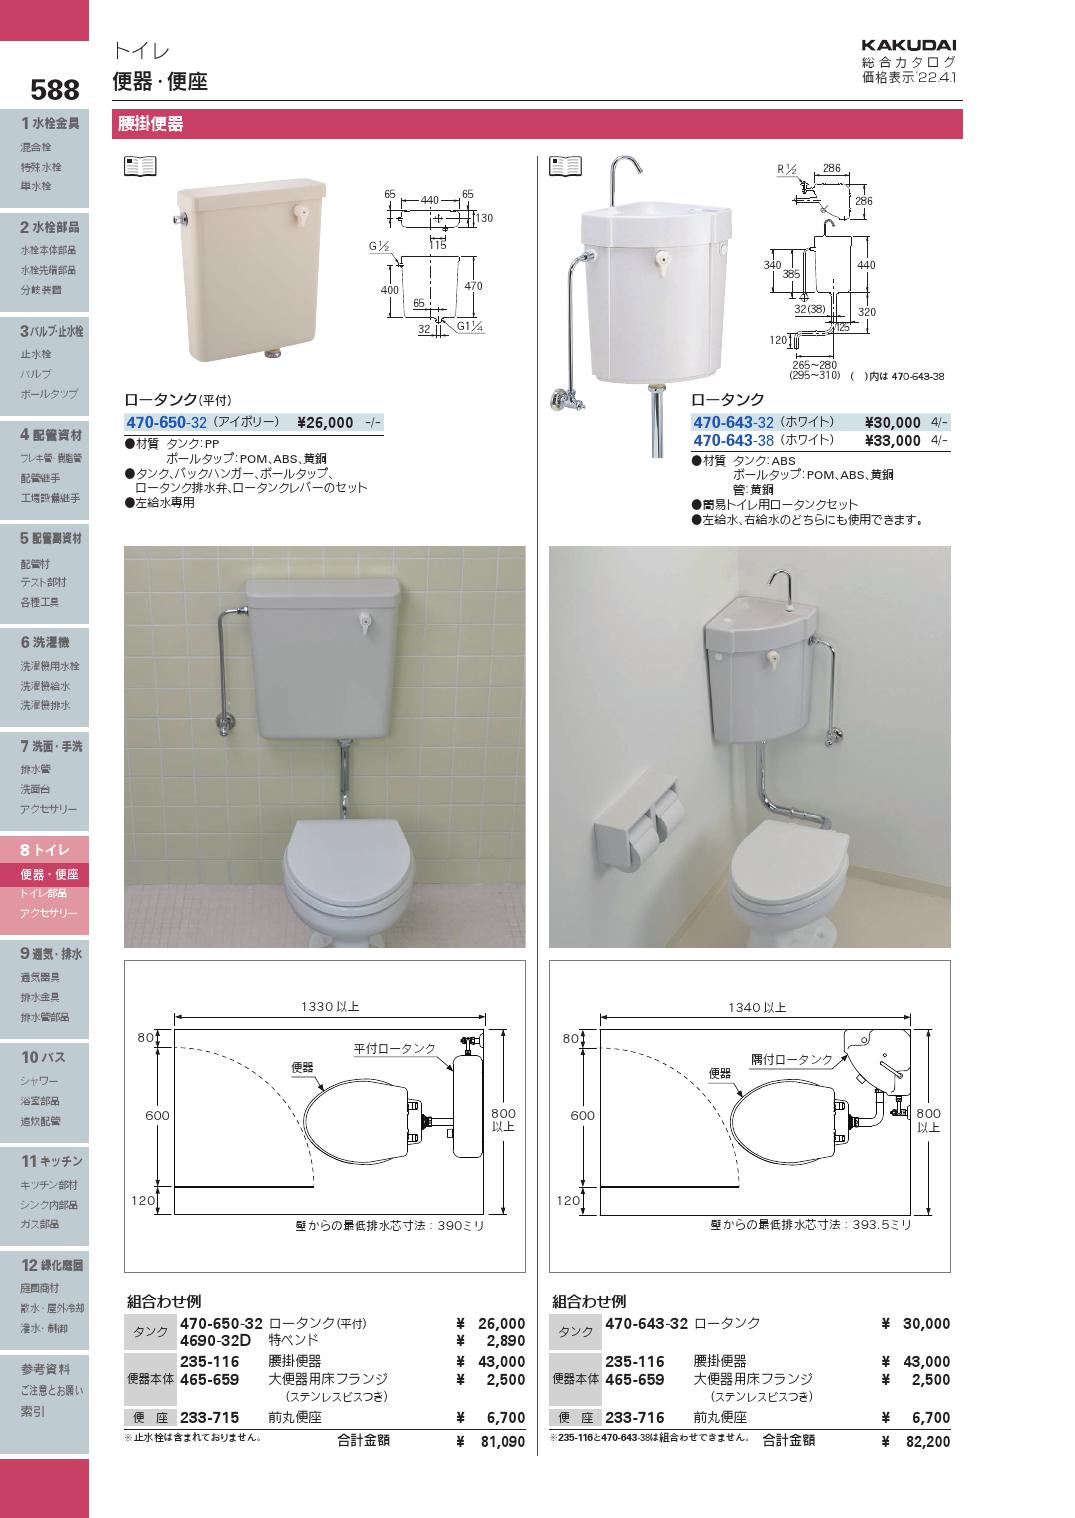 トイレ関連 カクダイ 470-643-32 ロータンク [] 通販